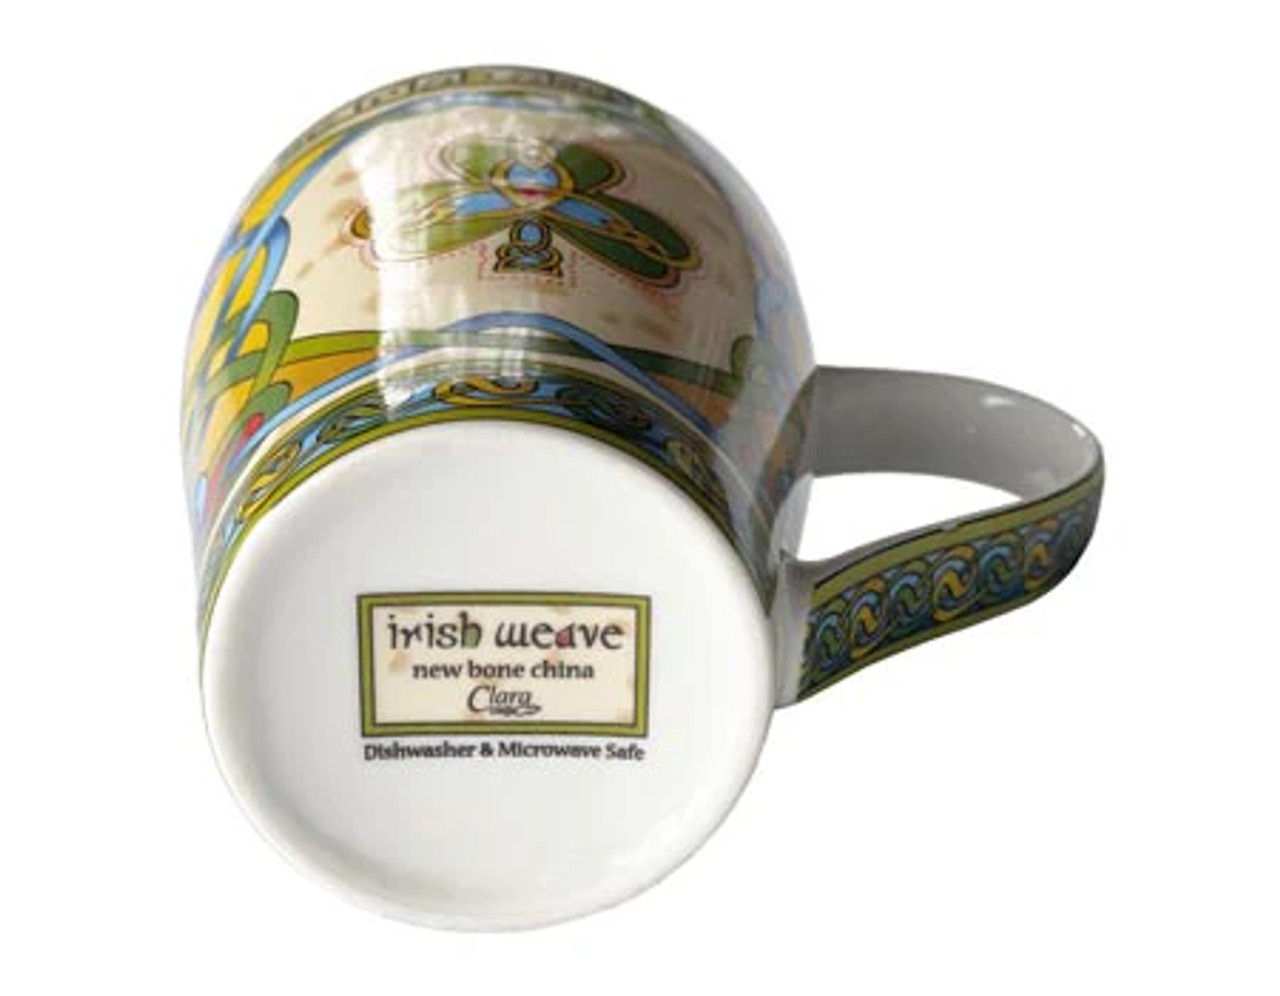 Slainte Irish Mug and Breakfast Tea Set